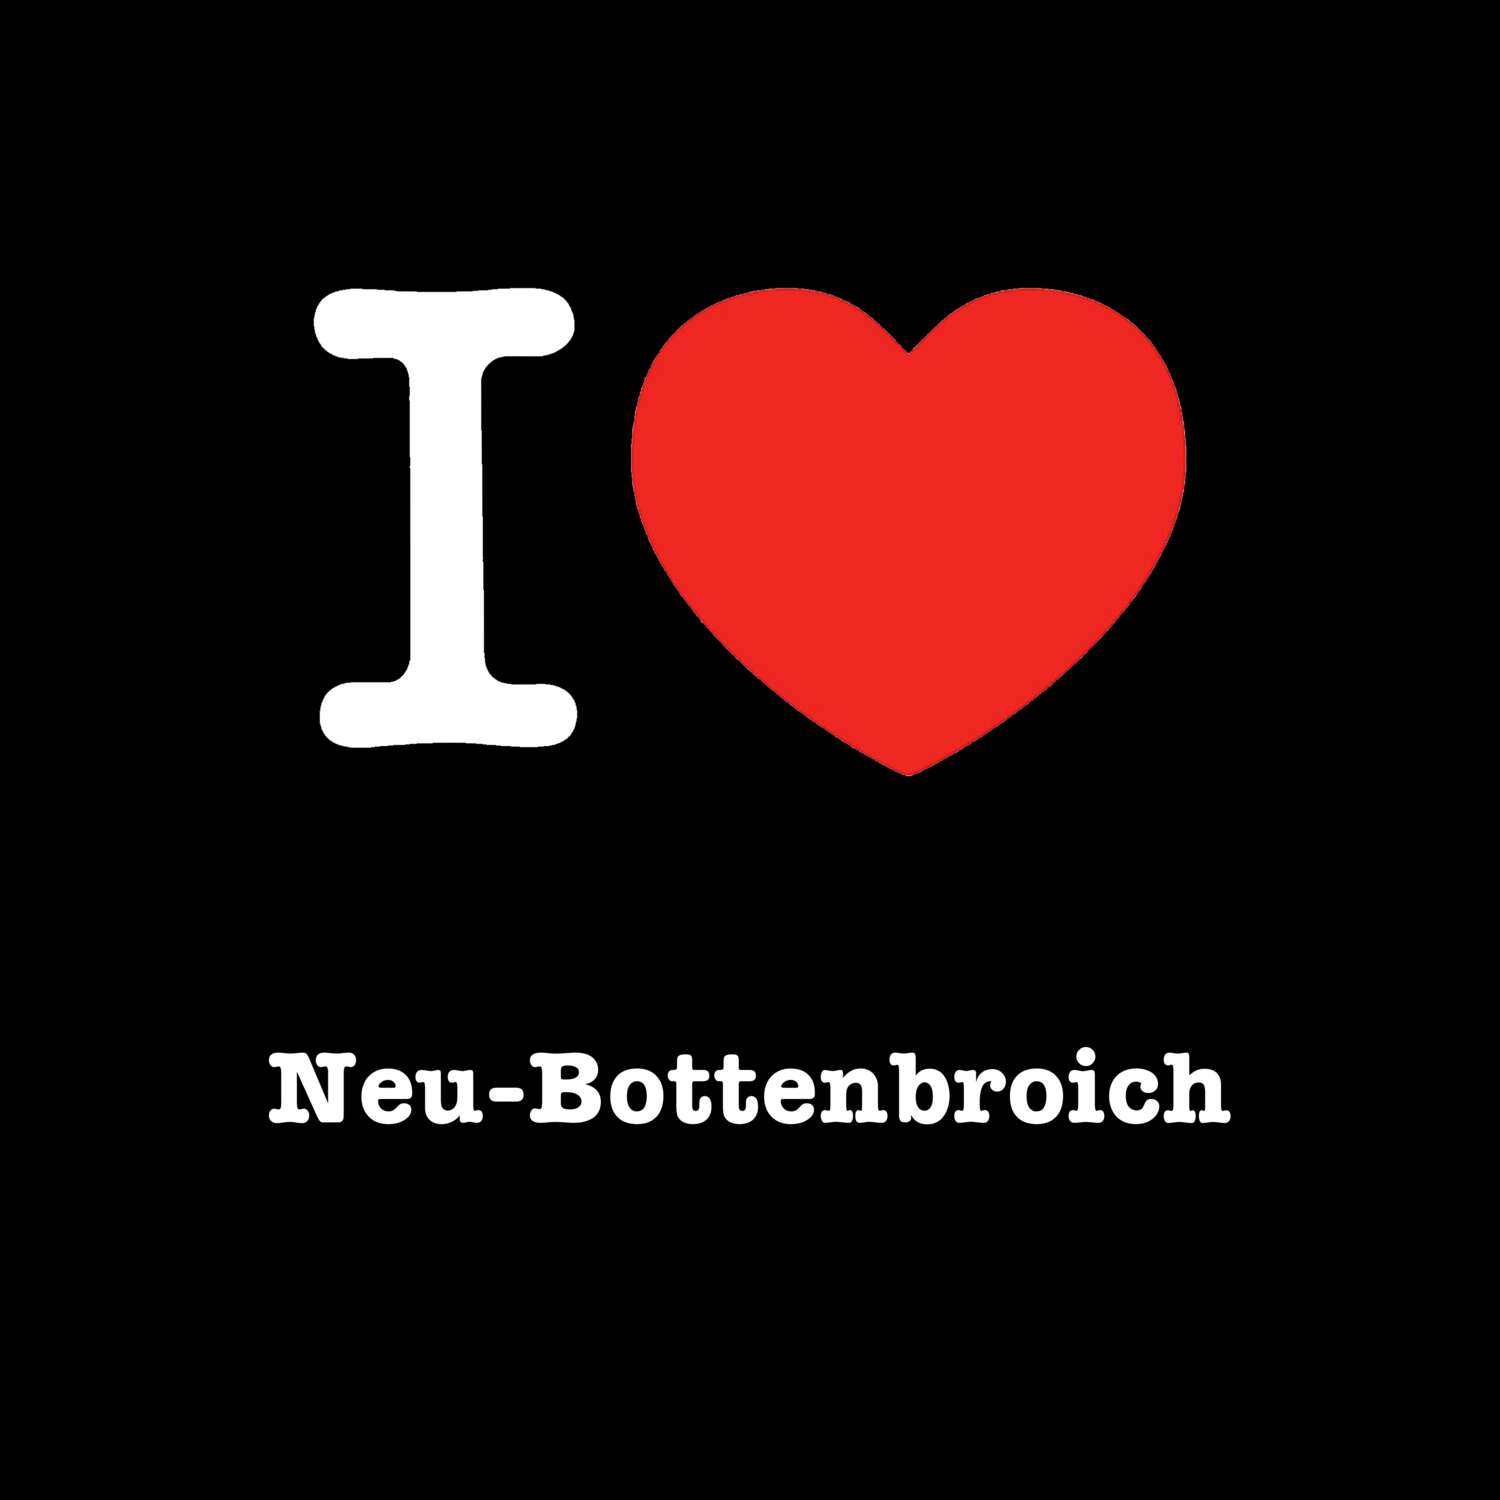 Neu-Bottenbroich T-Shirt »I love«